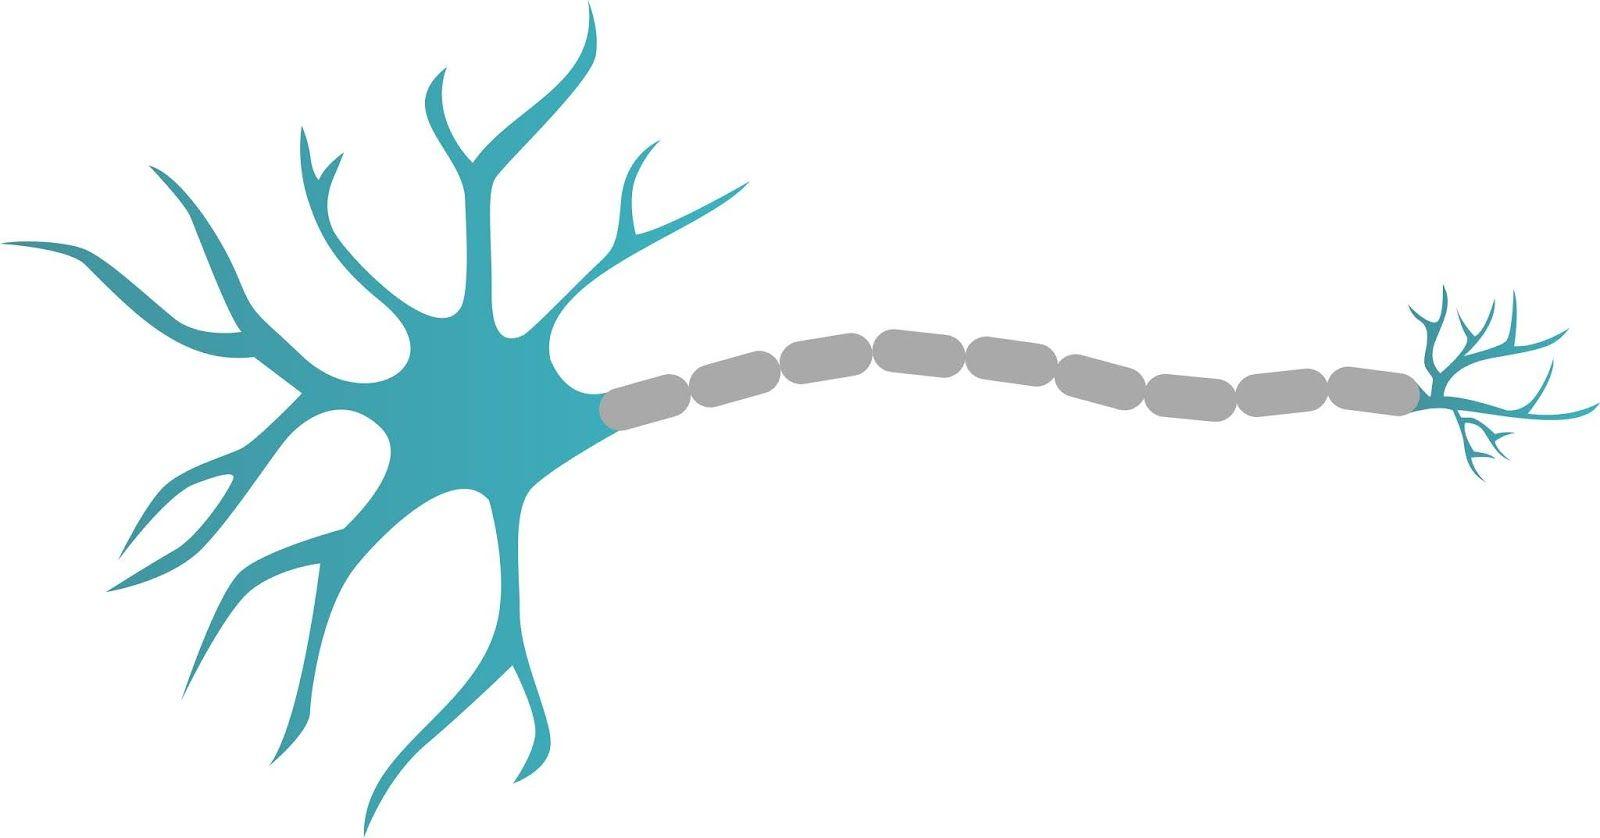 Neuron Logo - 3 Neuron png logo, Neuron png design, Neuron Design, Neuron logo ...